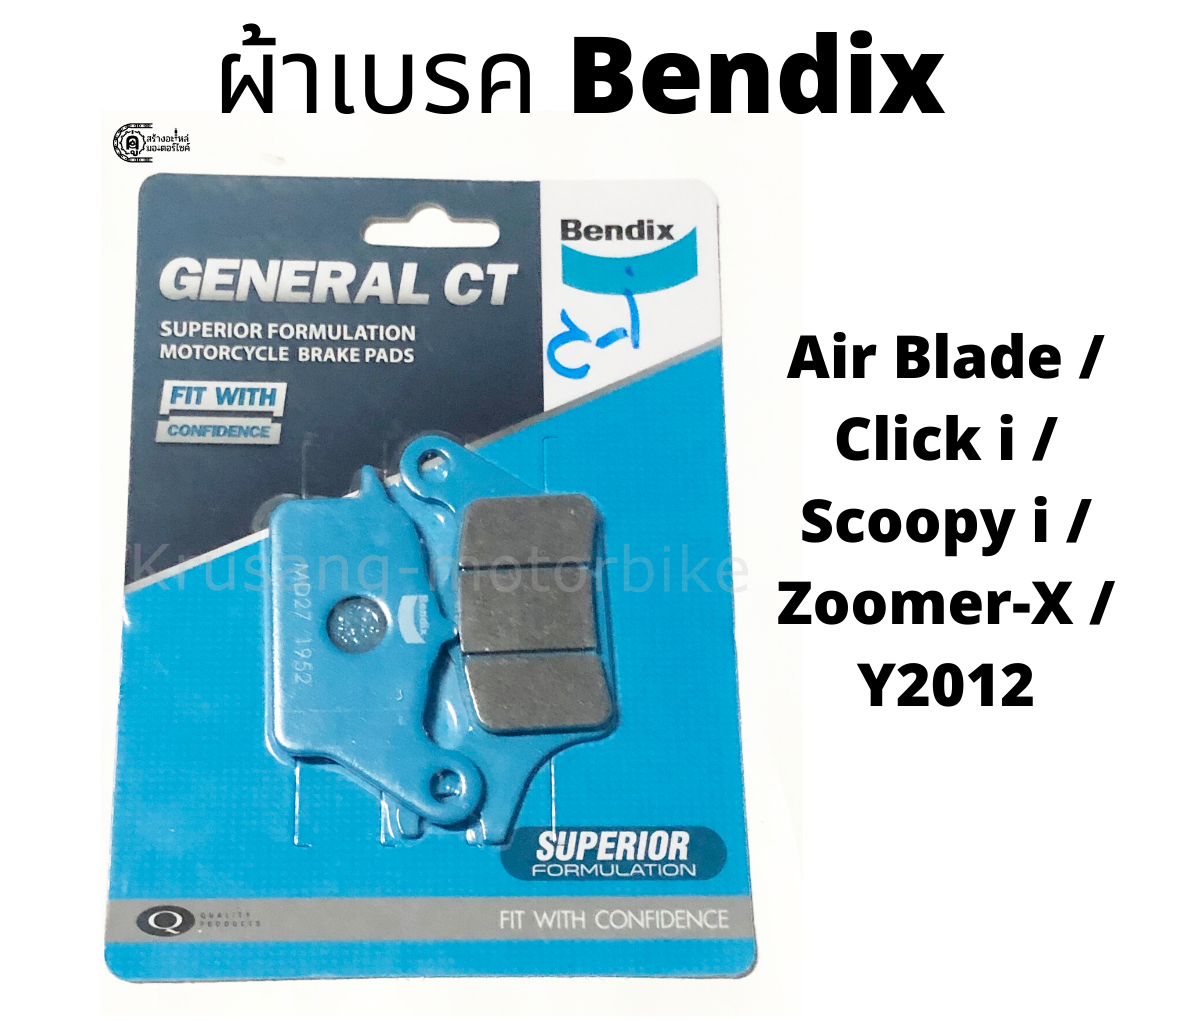 ผ้าเบรคหน้า ผ้าเบรคดิสหน้า Bendix สำหรับรถมอเตอร์ไซค์รุ่น Air Blade, Click I, Scoopy I, Zoomer-X, ...